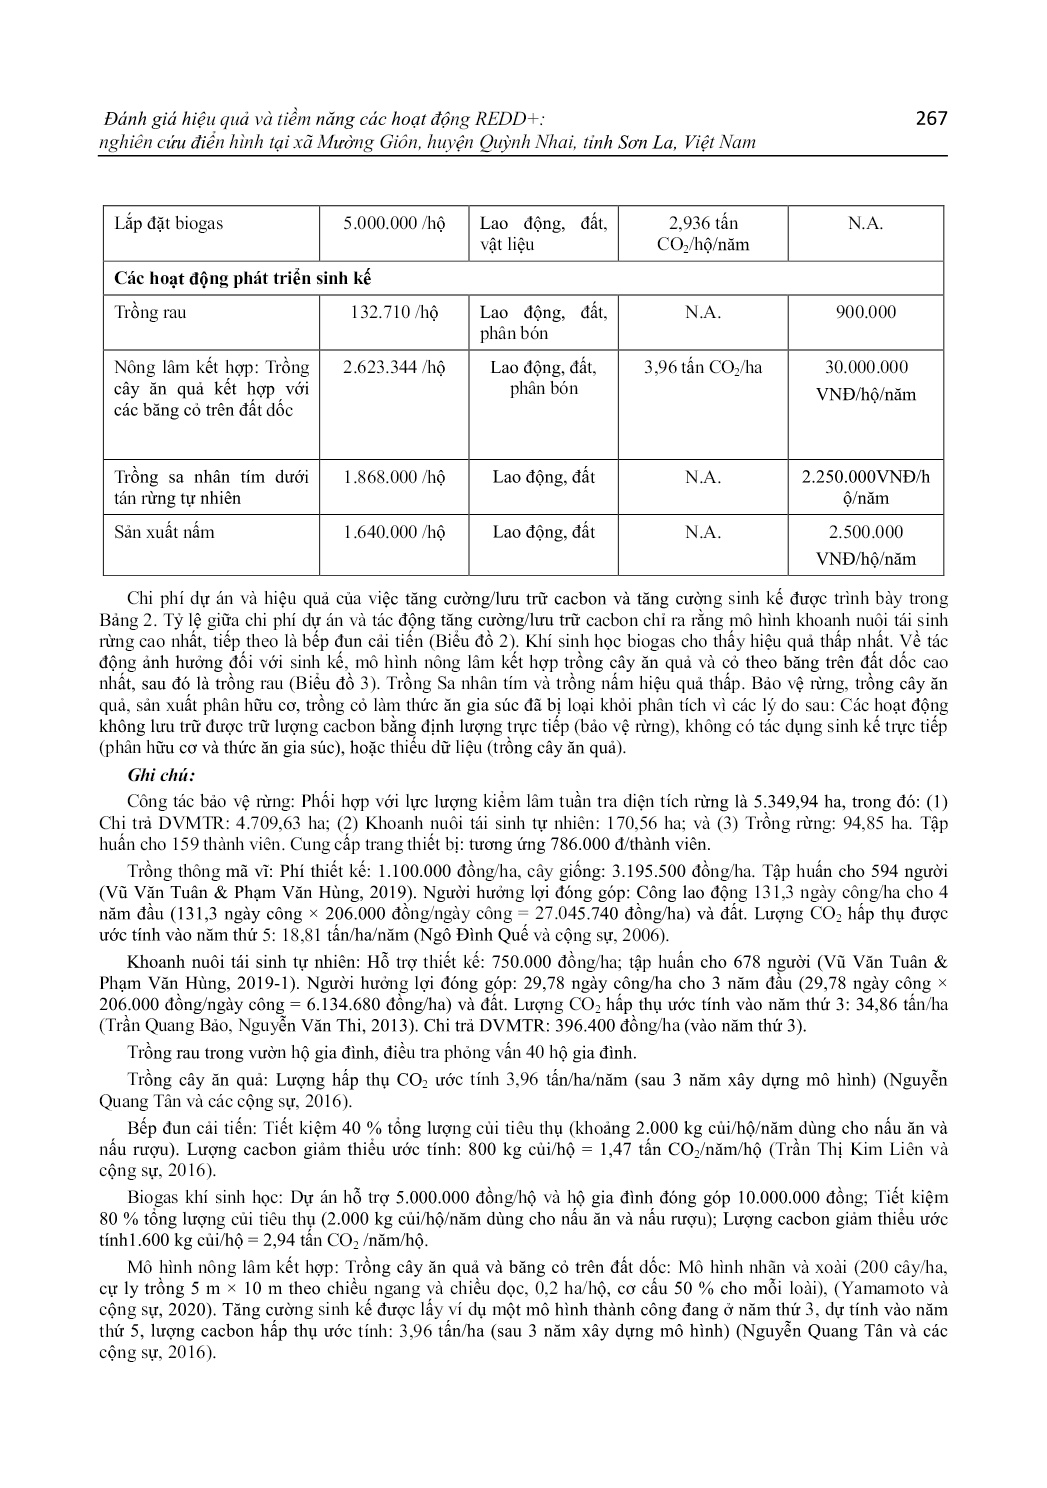 Đánh giá hiệu quả và tiềm năng các hoạt động redd+: Nghiên cứu điển hình tại xã Mường Giôn, huyện Quỳnh Nhai, tỉnh Sơn La, Việt Nam trang 5